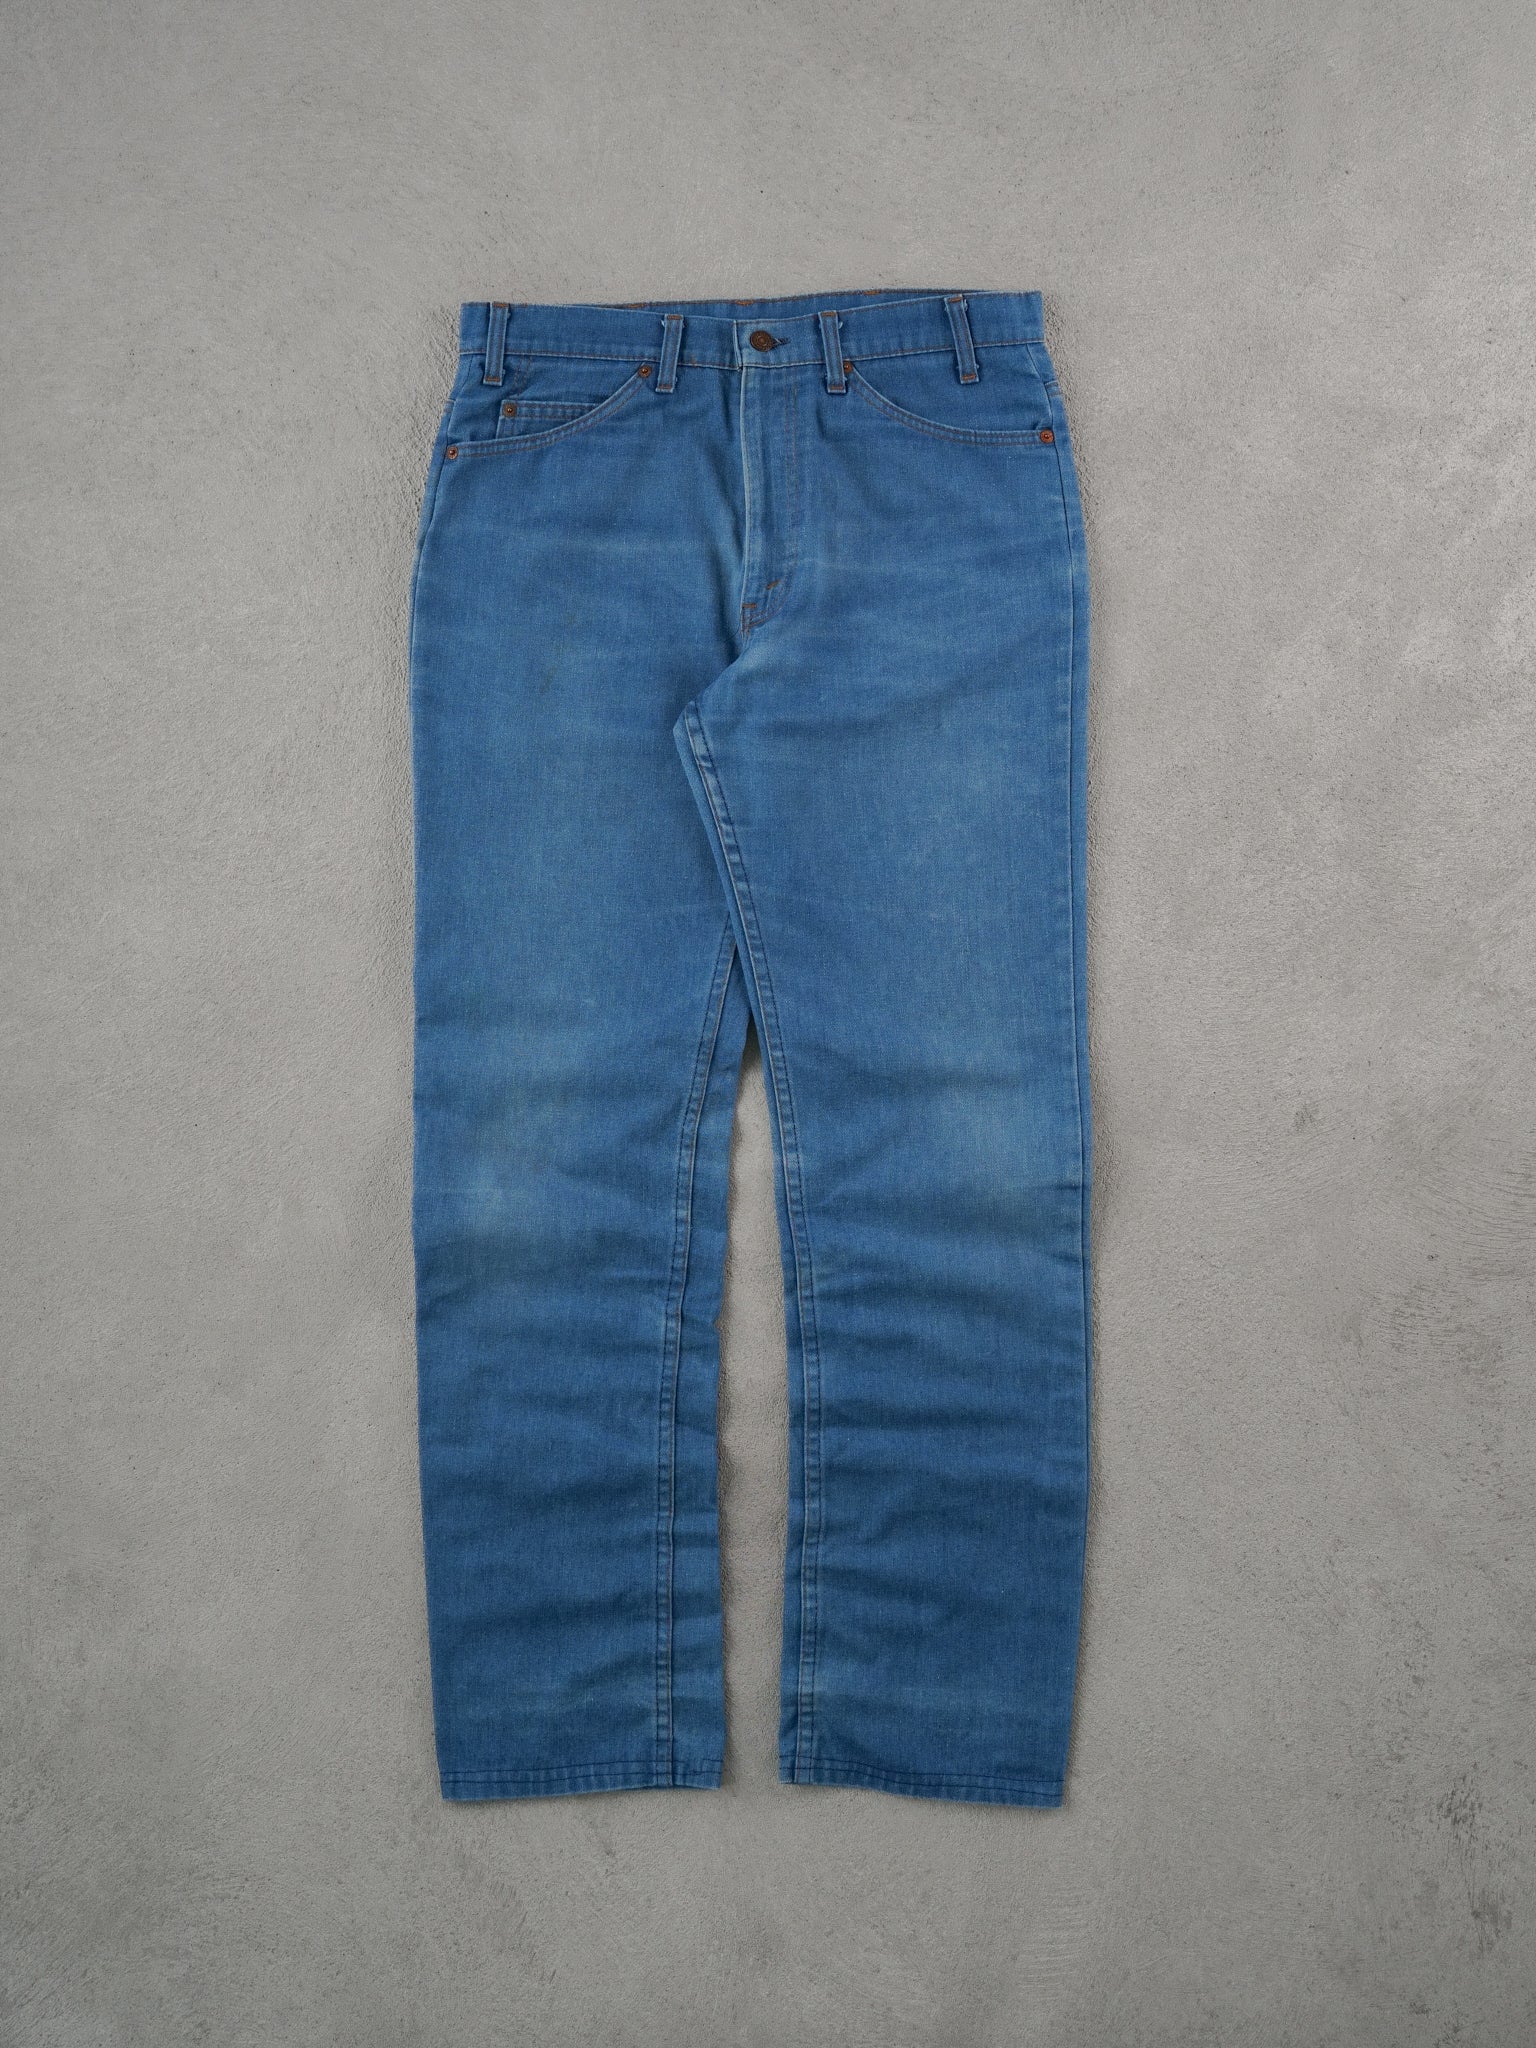 Vintage 70s Blue Levi's Denim Jeans (34x33)